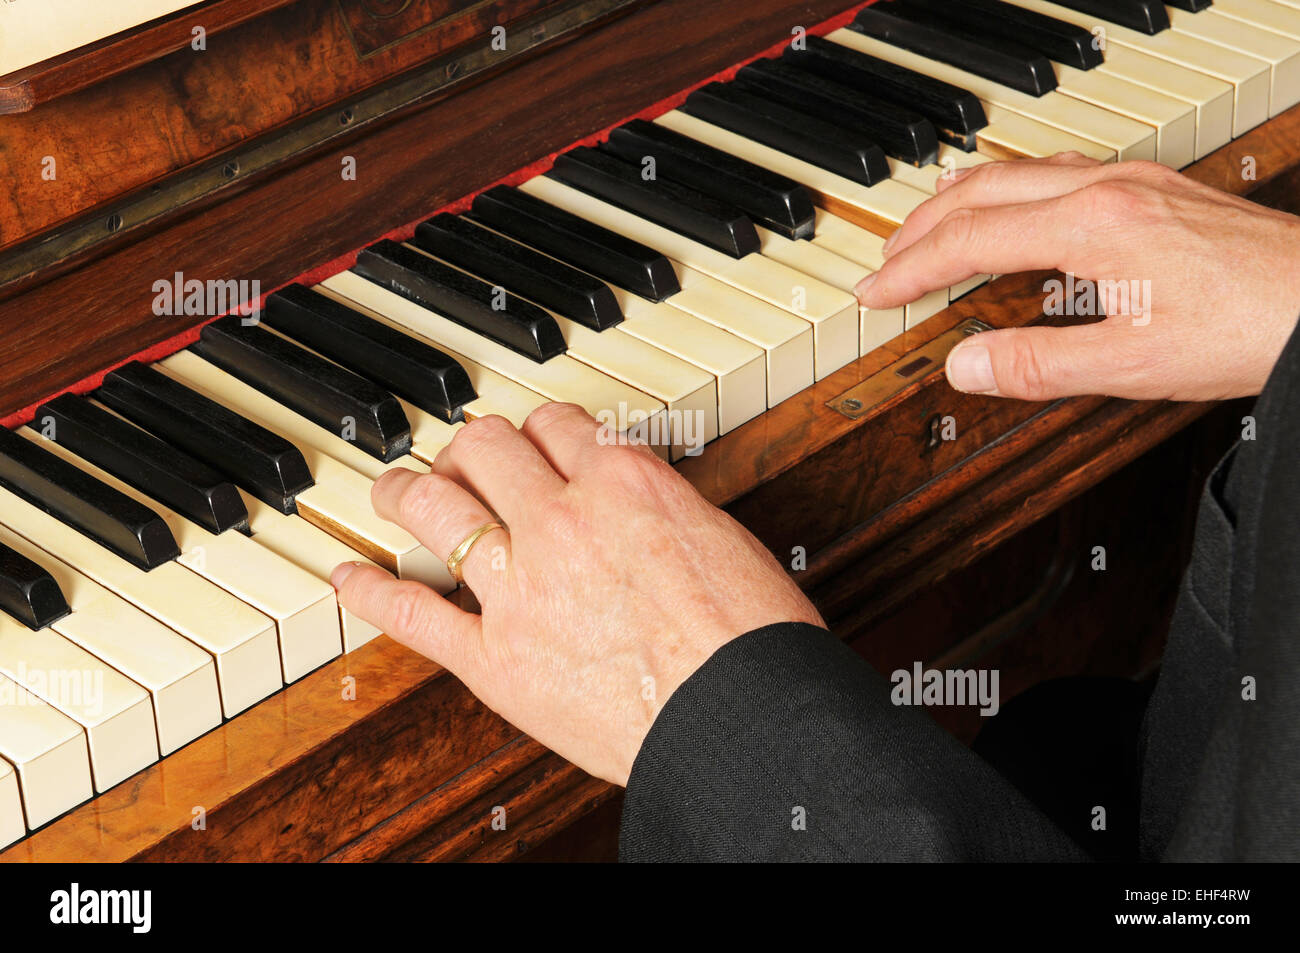 Klavier / Piano Stock Photo - Alamy